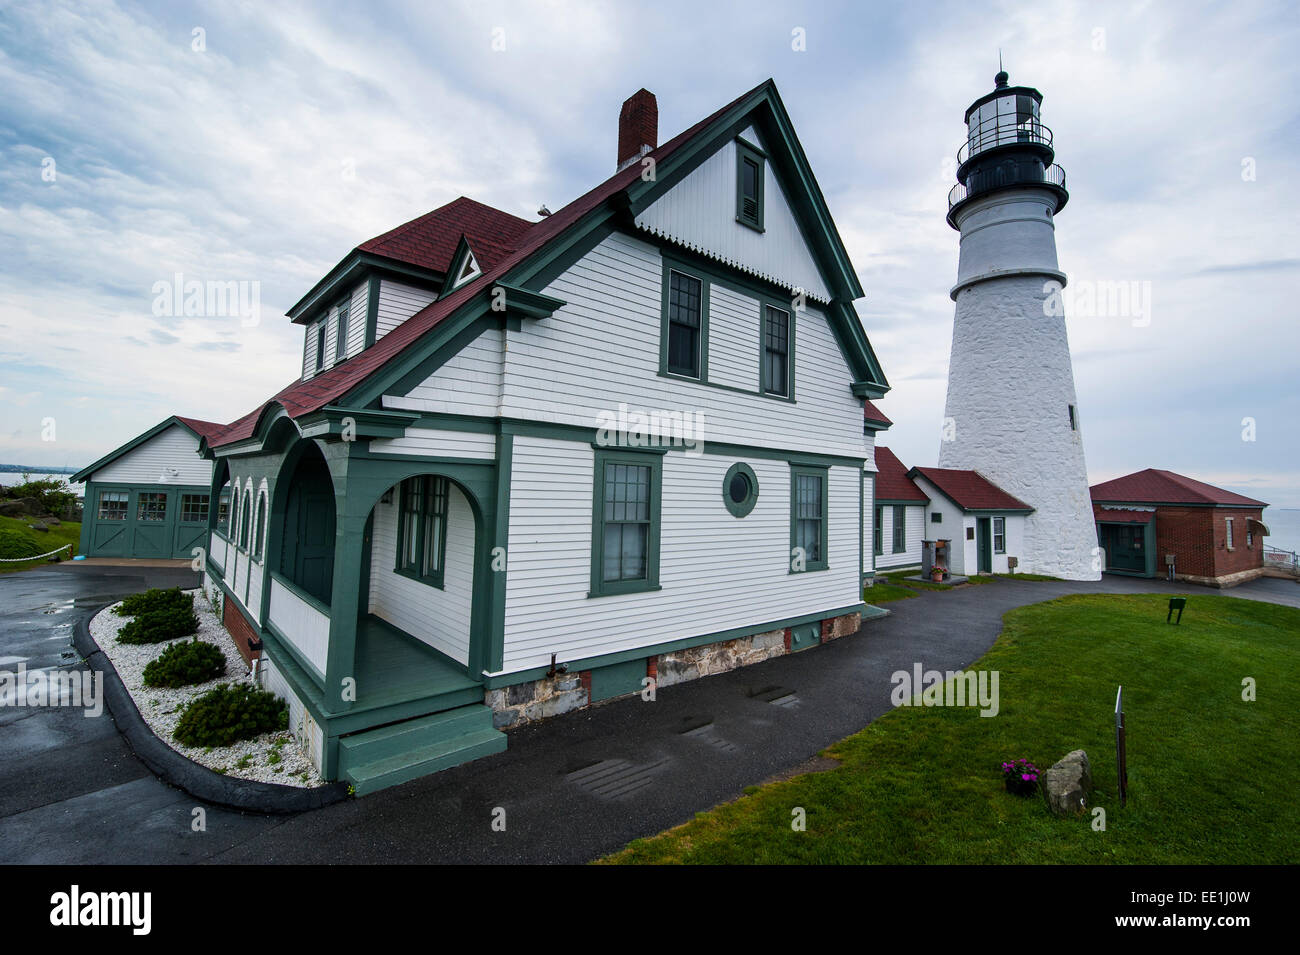 Portland Head Light, phare historique de Cape Elizabeth, dans le Maine, la Nouvelle Angleterre, États-Unis d'Amérique, Amérique du Nord Banque D'Images